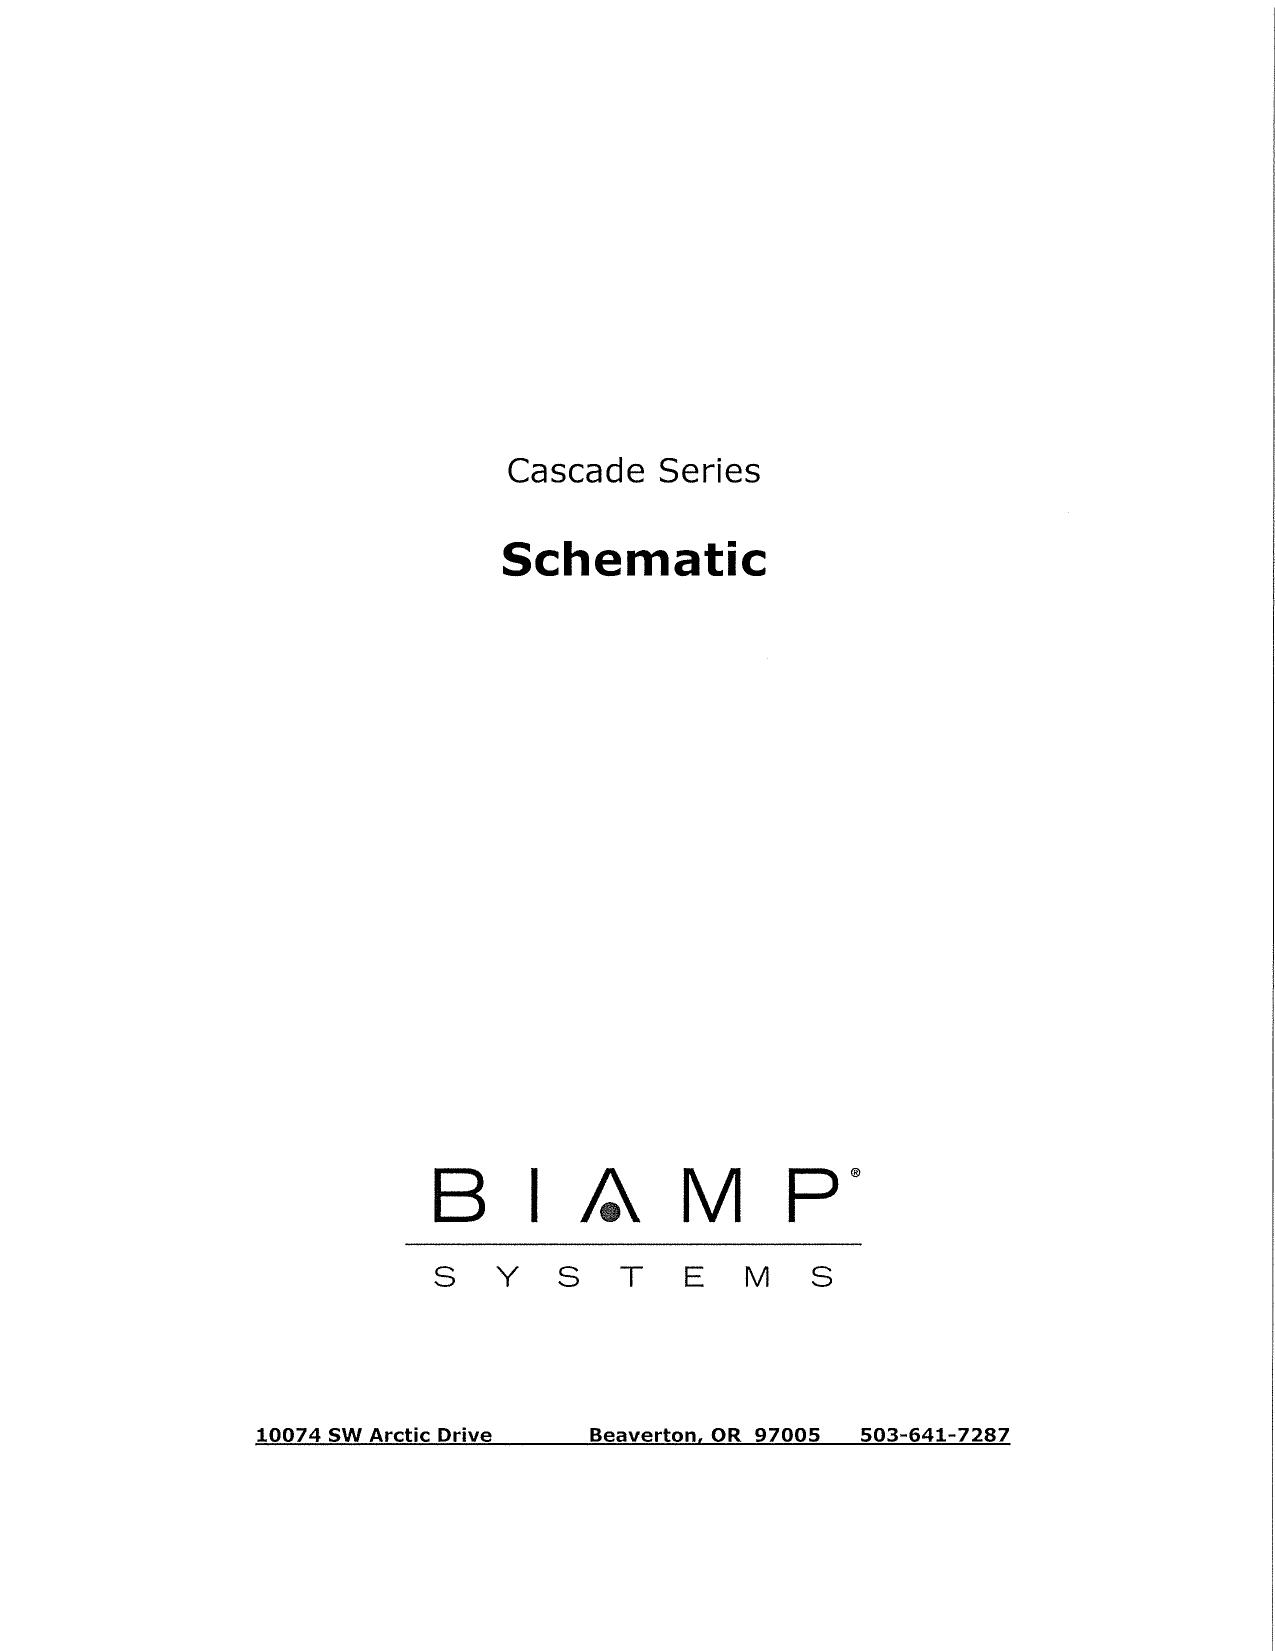 Biamp Cascade 12 16 Series Manual Manualzz